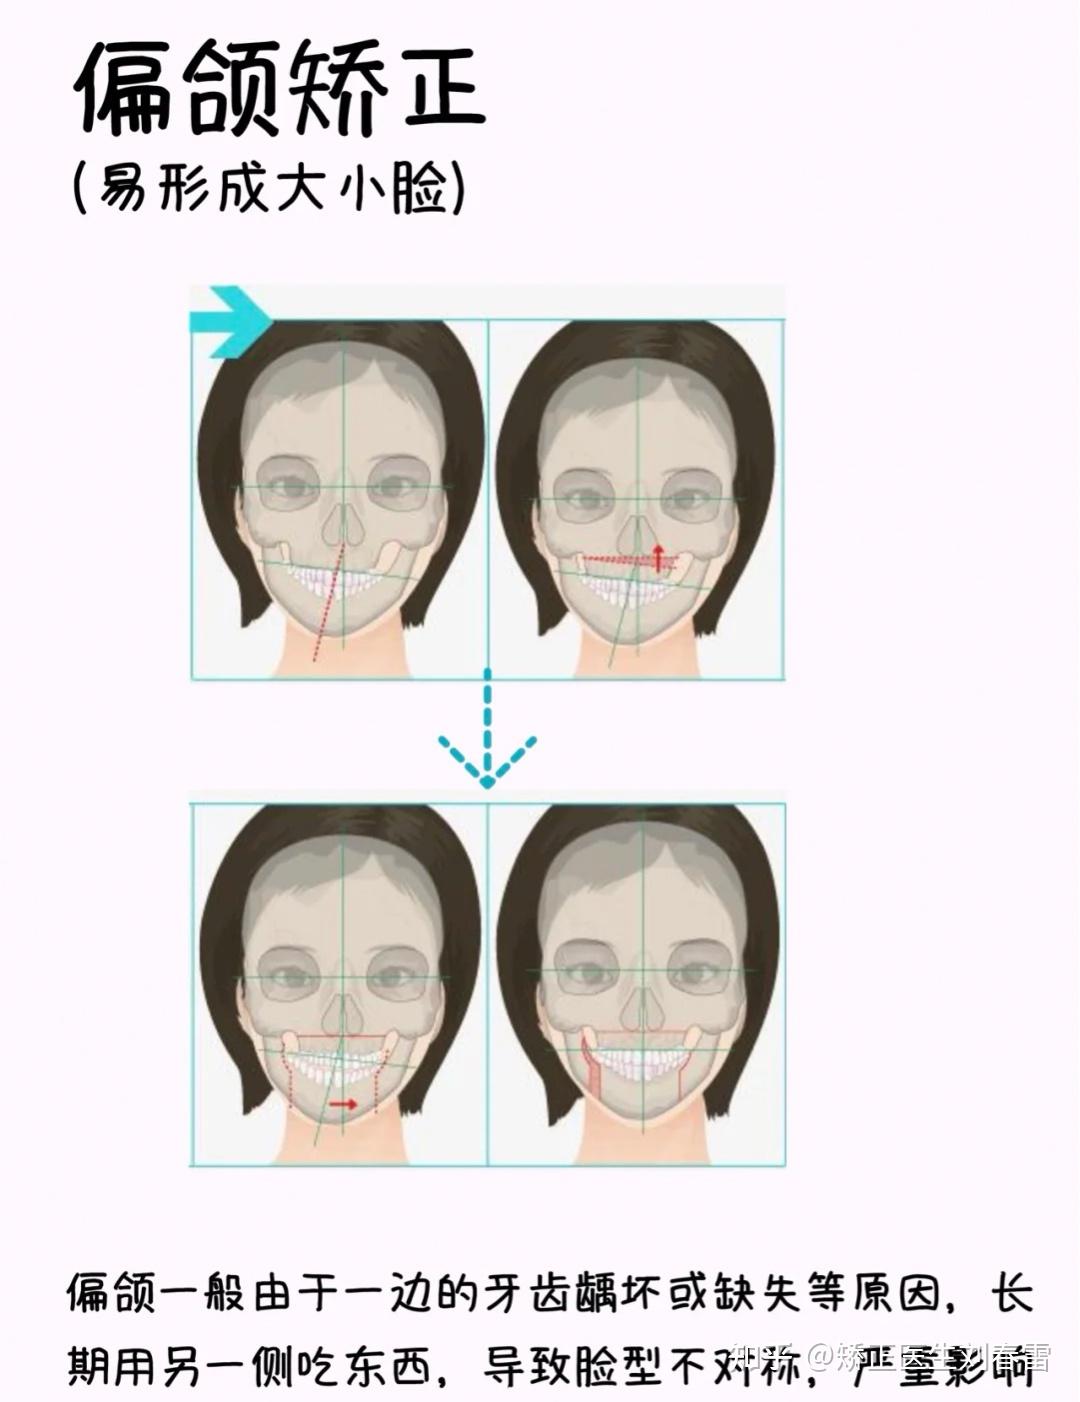 地包天-易形成"月牙脸以下三类人牙步矫正,脸型变化最大矫正.